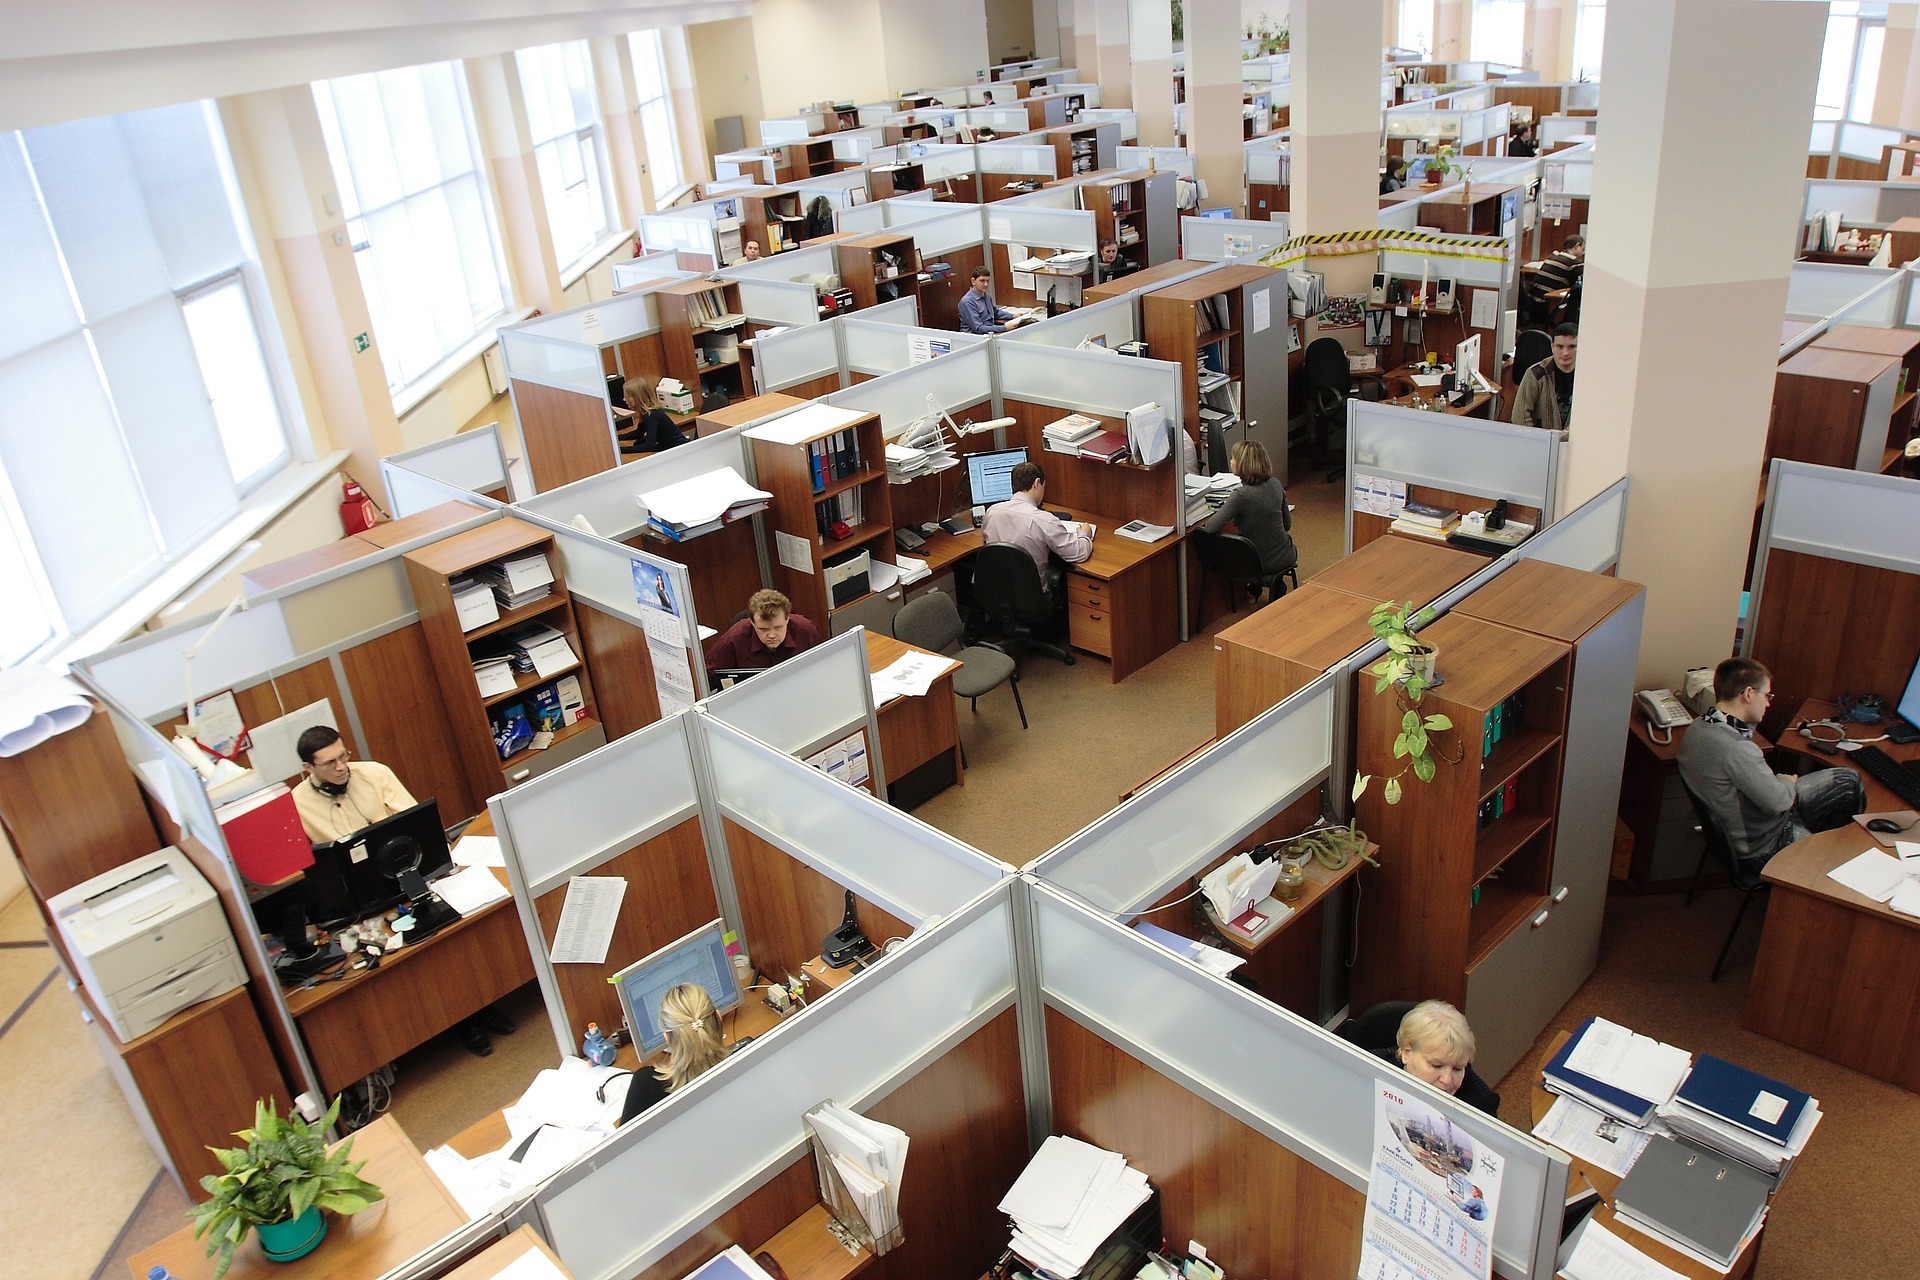 Cubicles vs Open Office Space - Marathon Building Environments